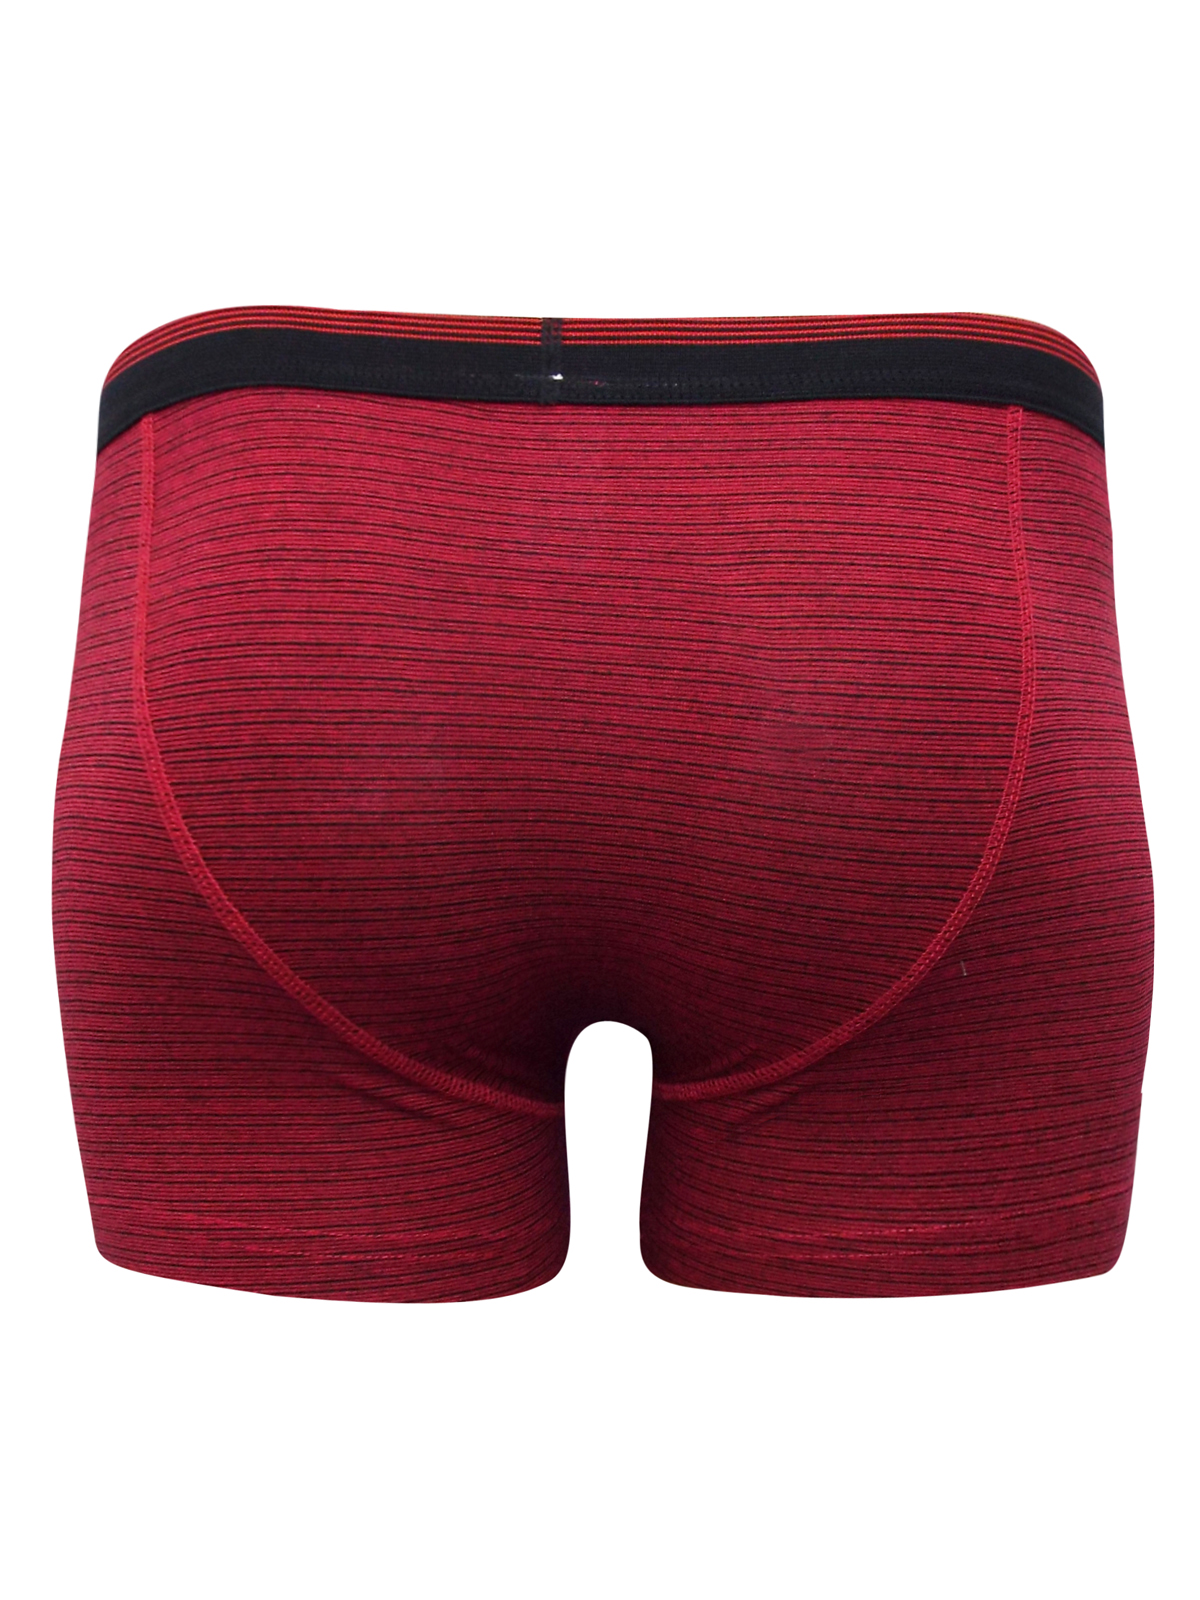 Debenhams - - D3benhams RED Cotton Rich Striped Boxers - Size Medium to 3XL